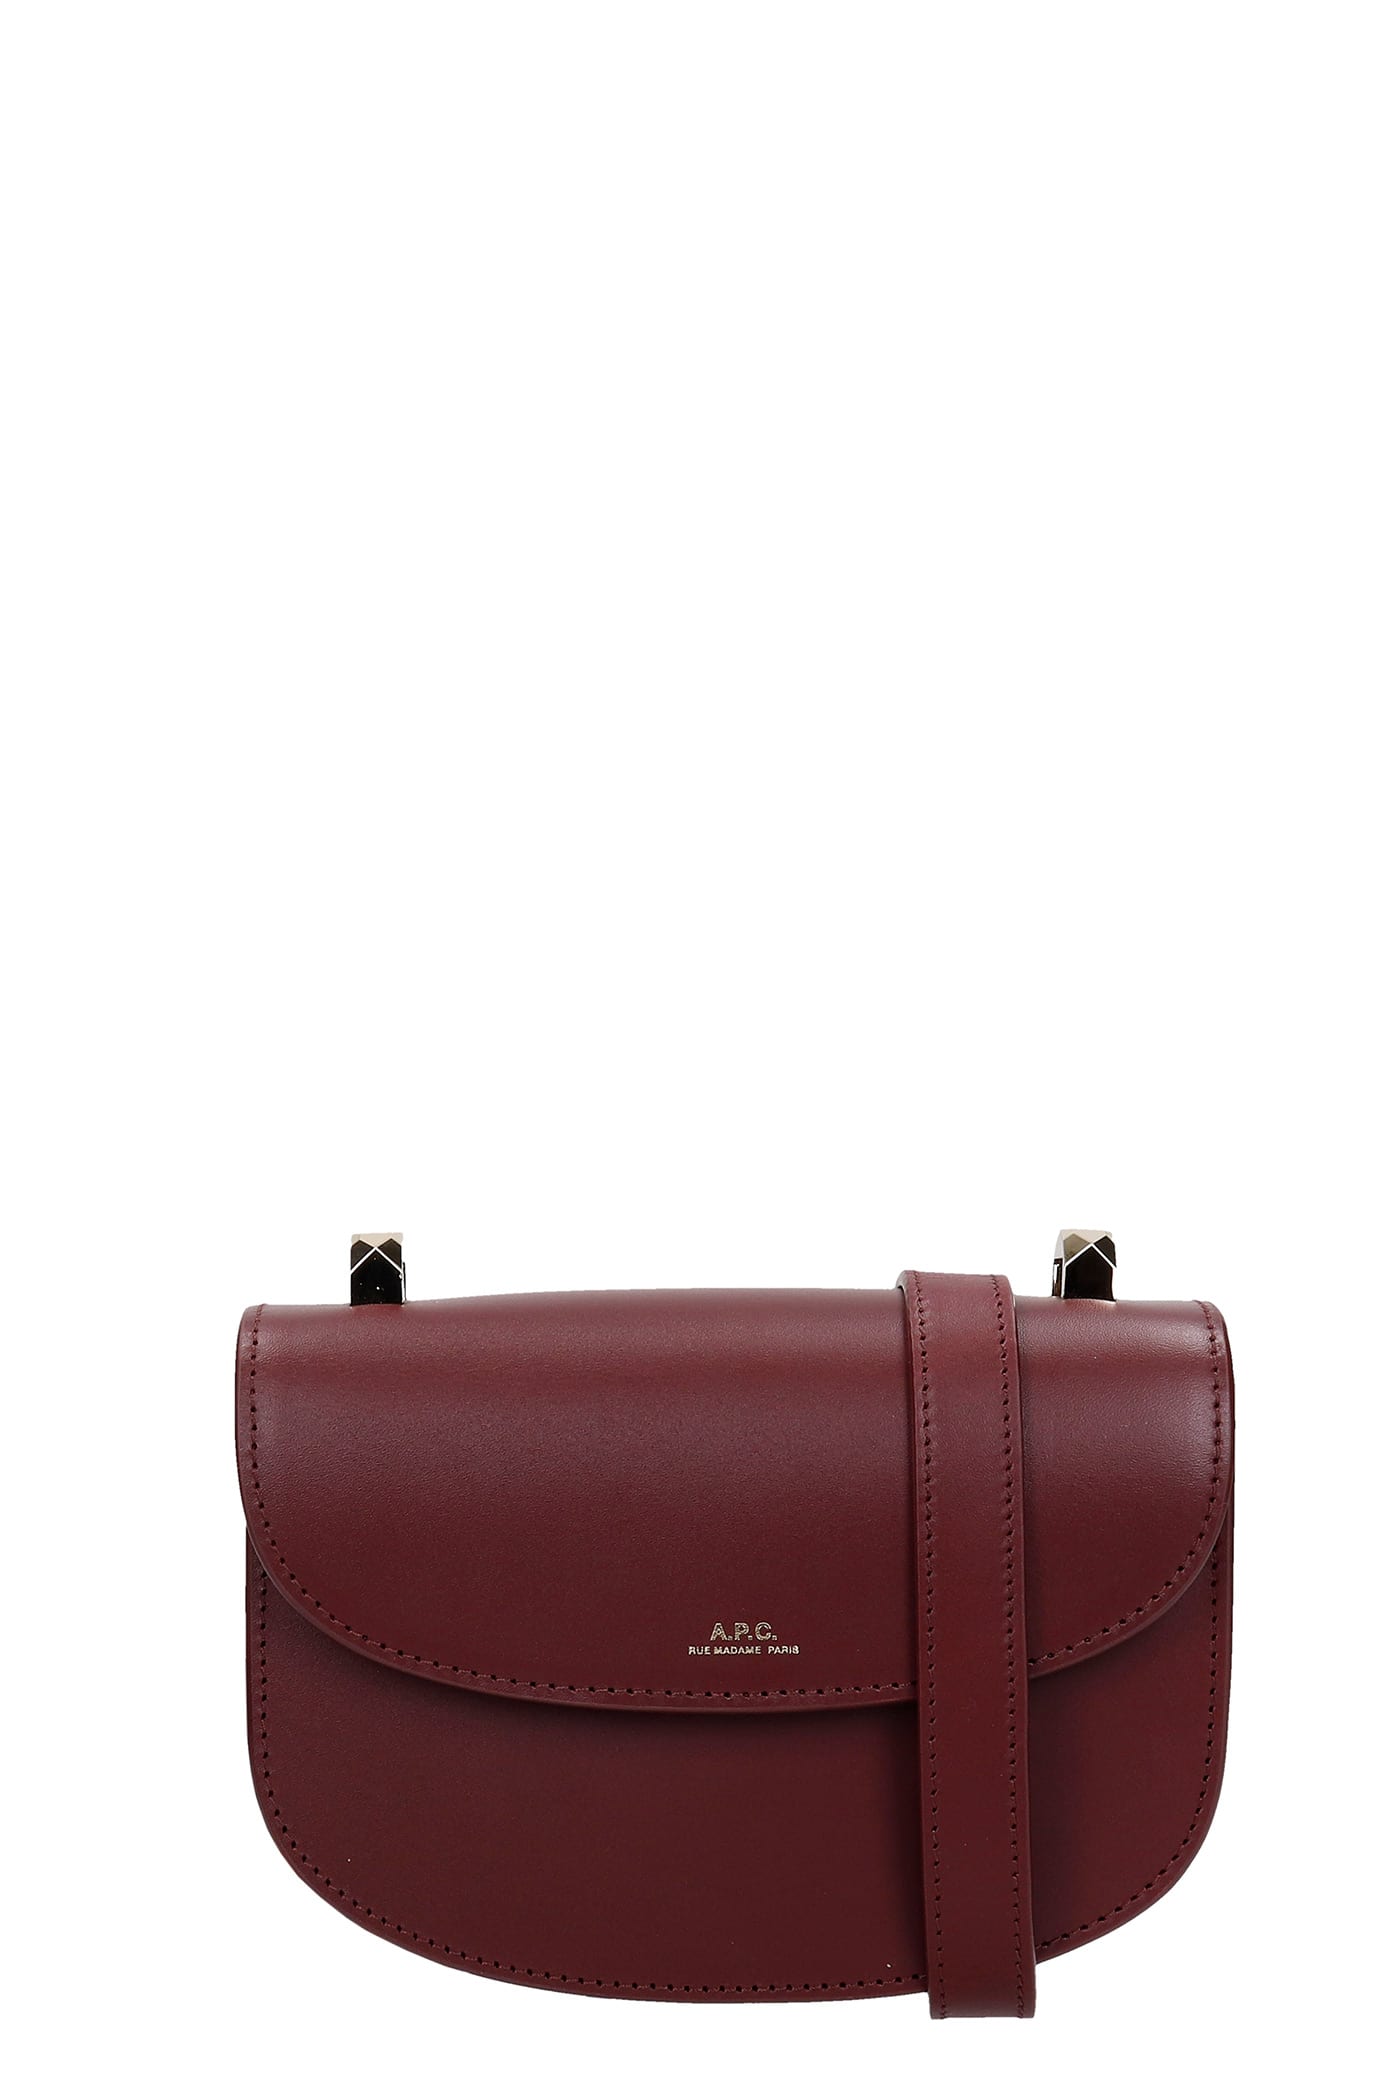 A.P.C. Geneve Mini Shoulder Bag In Bordeaux Leather